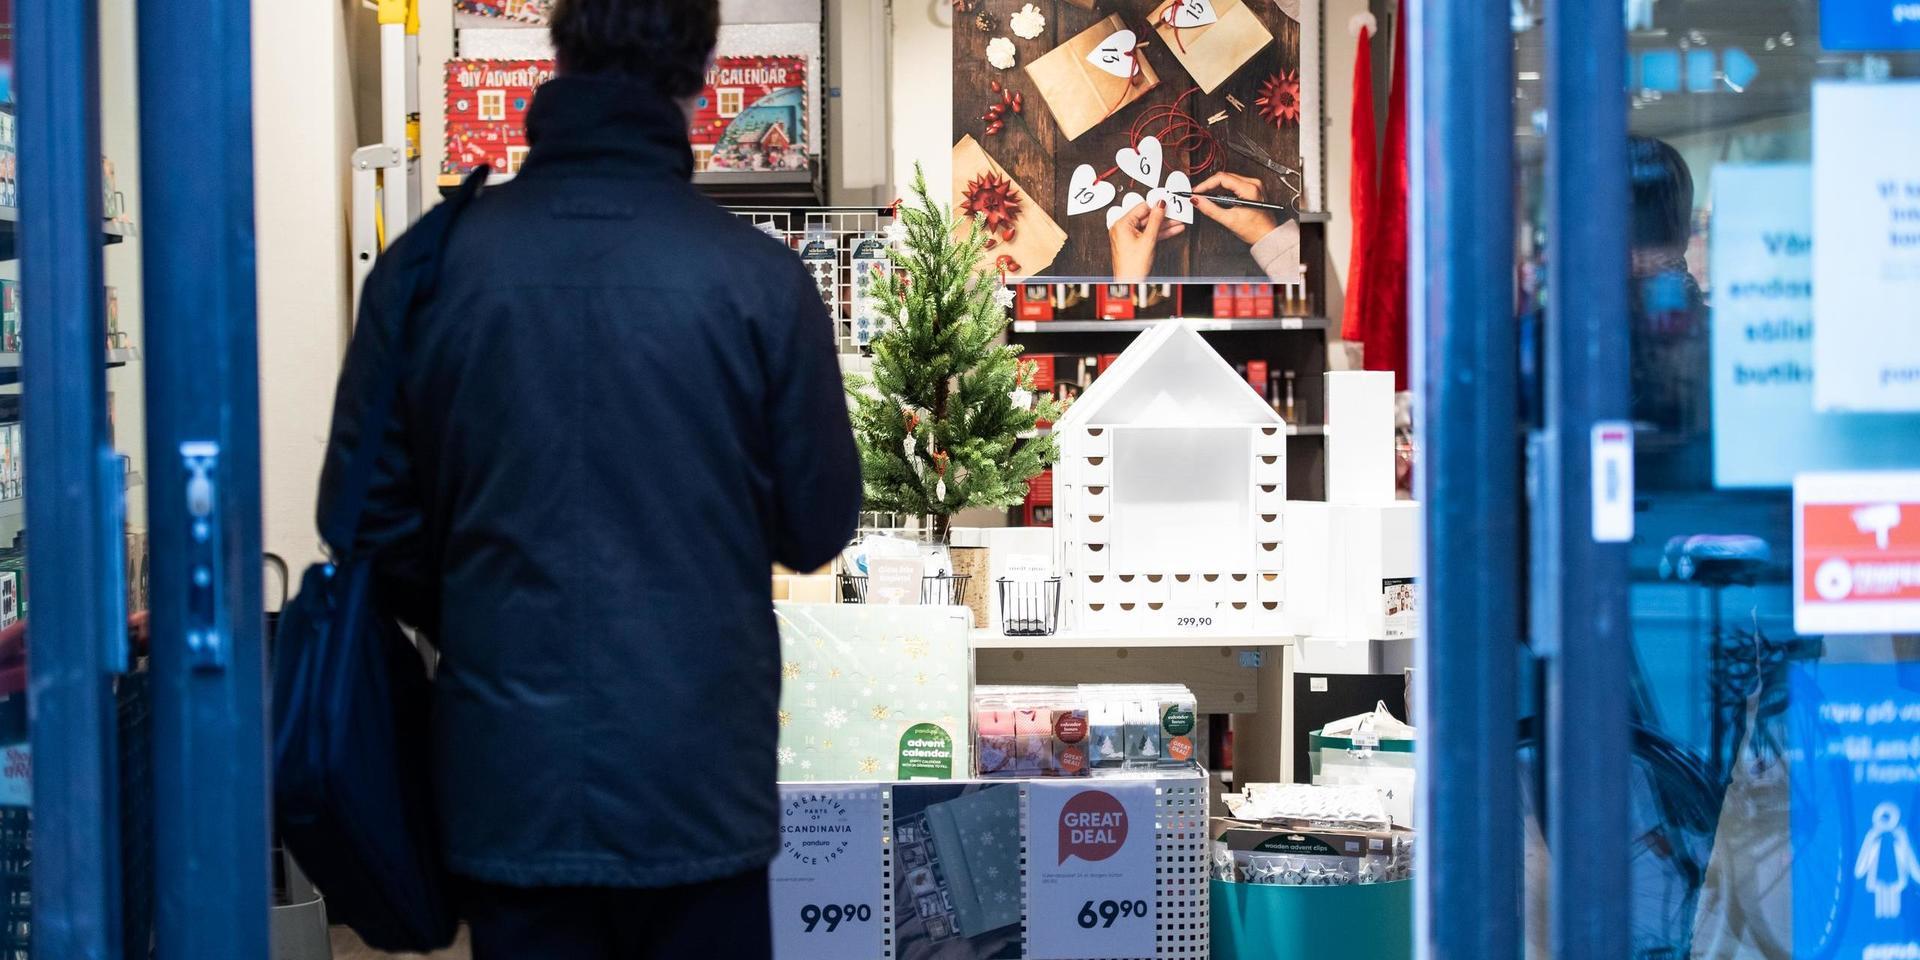 Handla julklappar redan nu i folktomma butiker, eller köp presentkort, är insändarskribentens tips för att stötta de lokala butikerna i julhandeln.